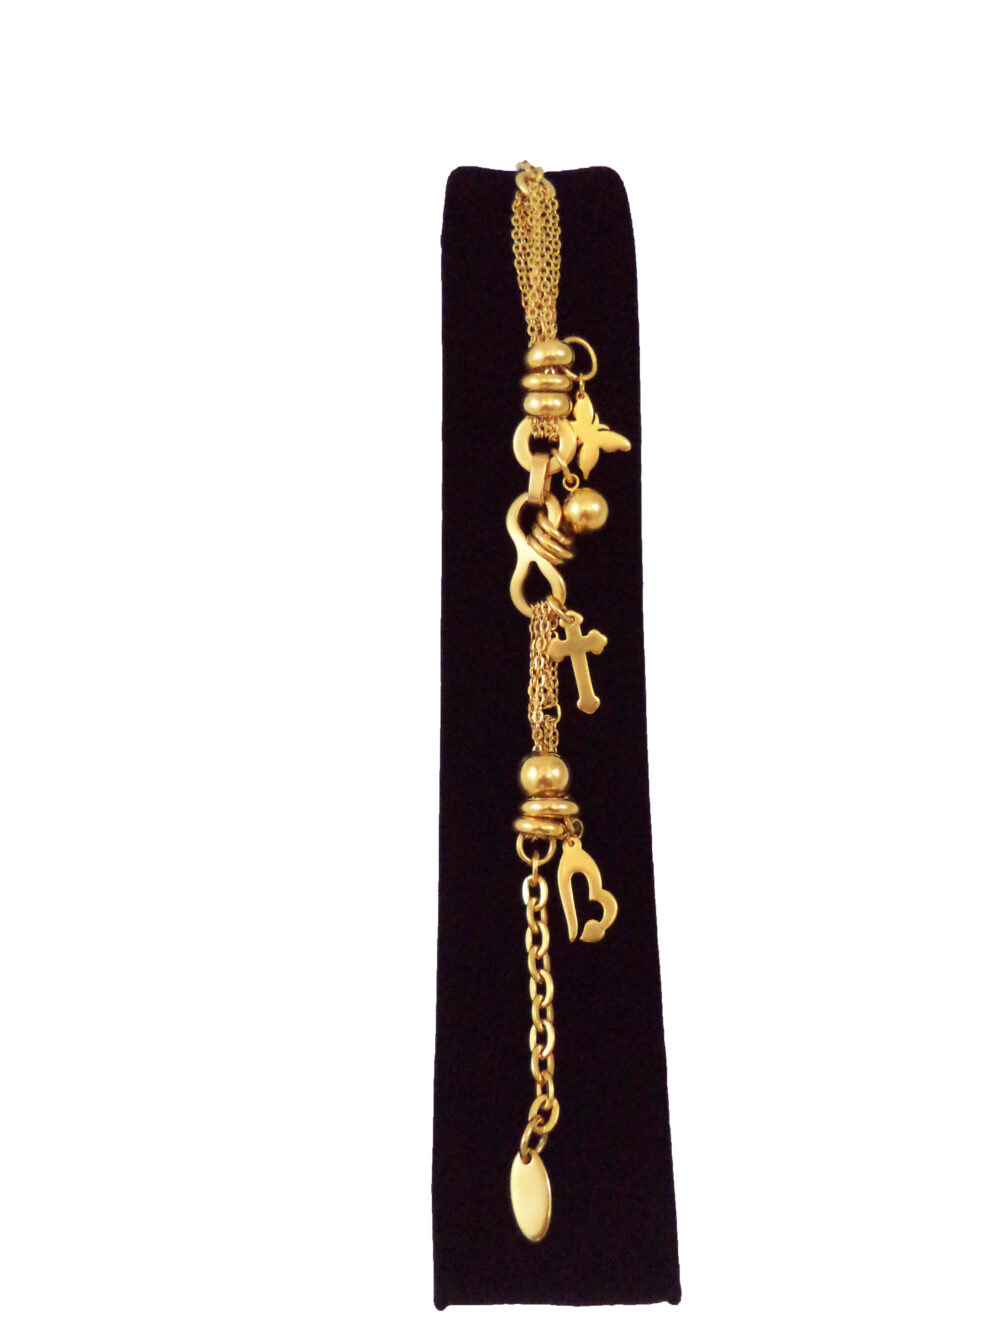 دستبند زنجیری استیل 316 آویزدار طرح قلب و صلیب و پروانه طلایی رنگ